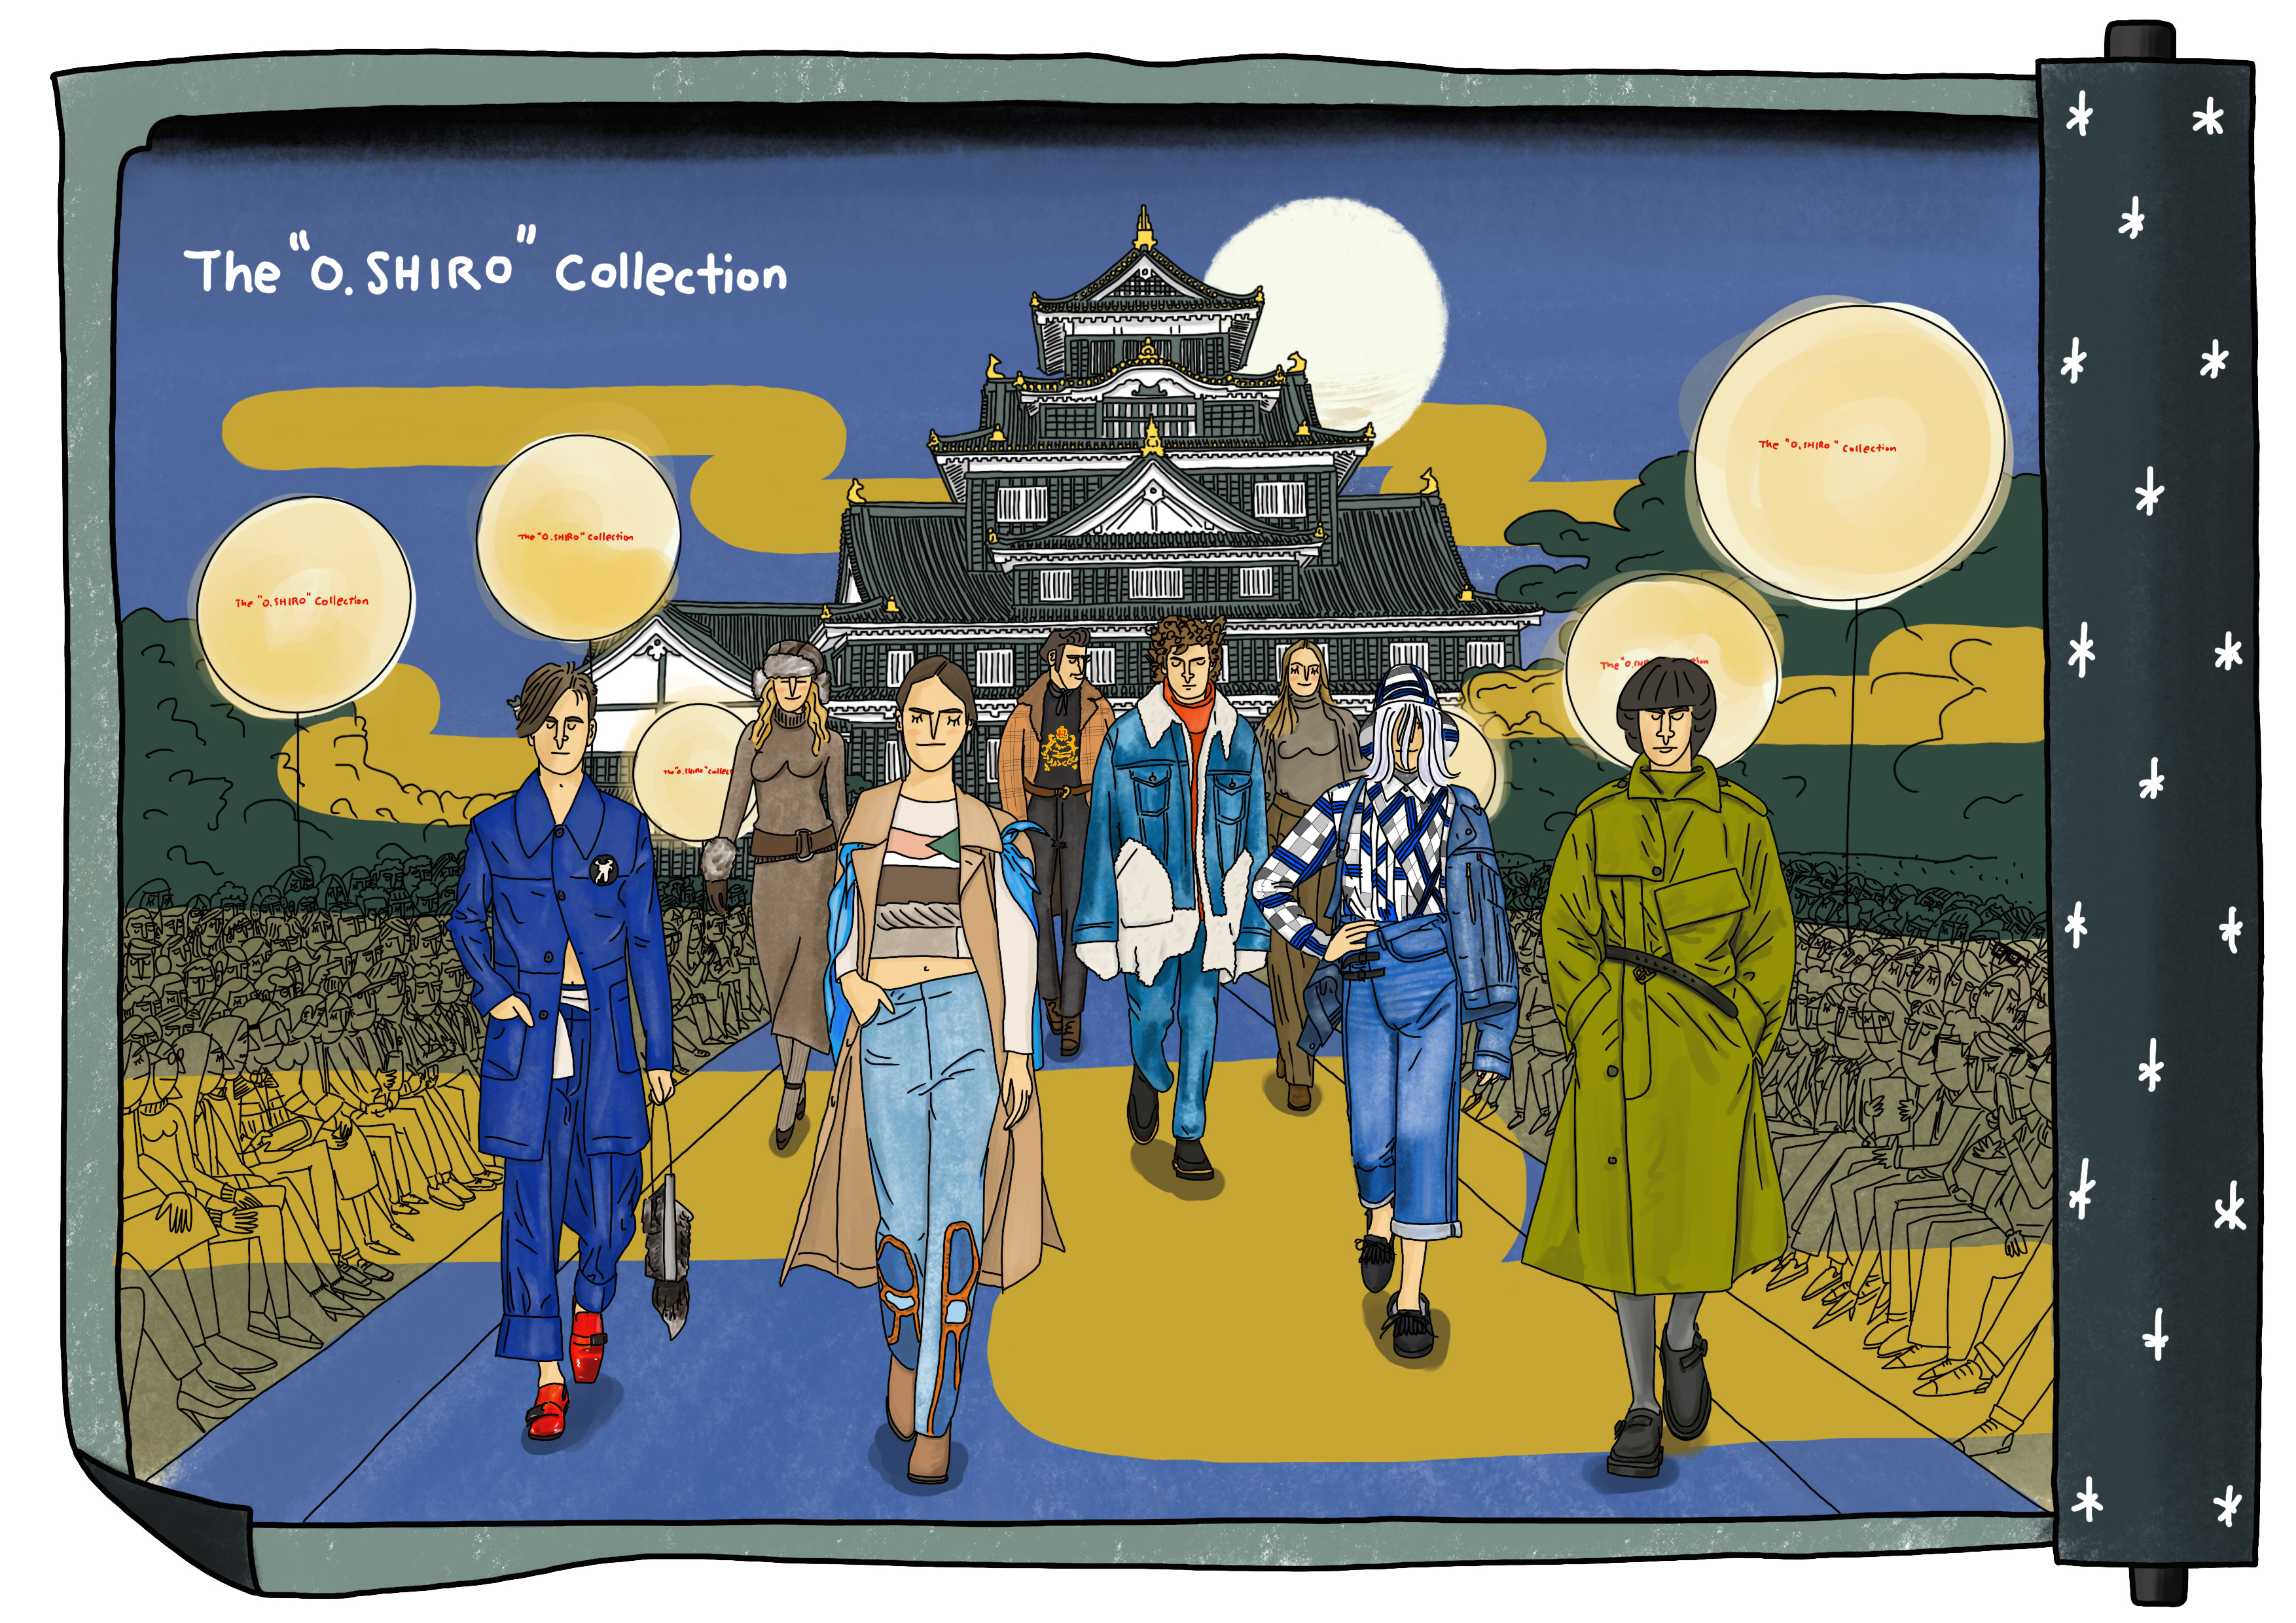 国内初 岡山城で Gq プロデュースのファッションショーを開催 日本を代表するブランドが繊維産地にフォーカスしたファッションショーに挑戦 コンデナスト ジャパンのプレスリリース